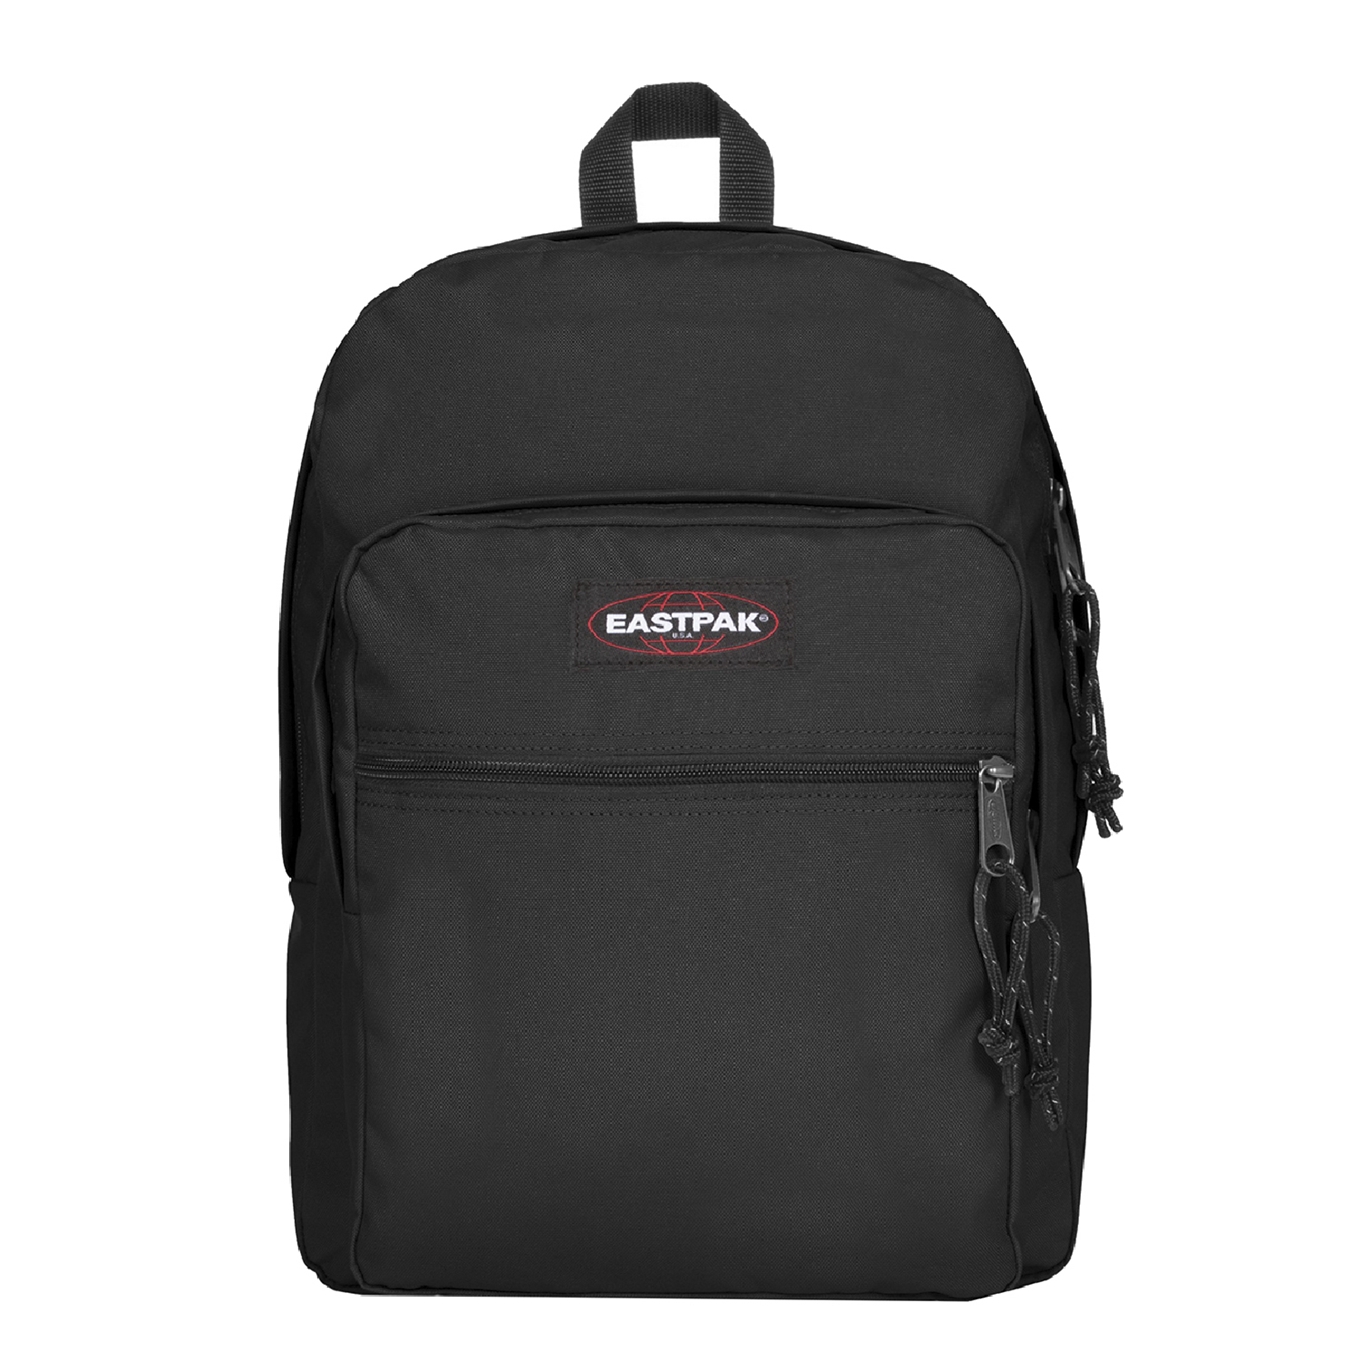 Eastpak Morius Light Rugzak black backpack